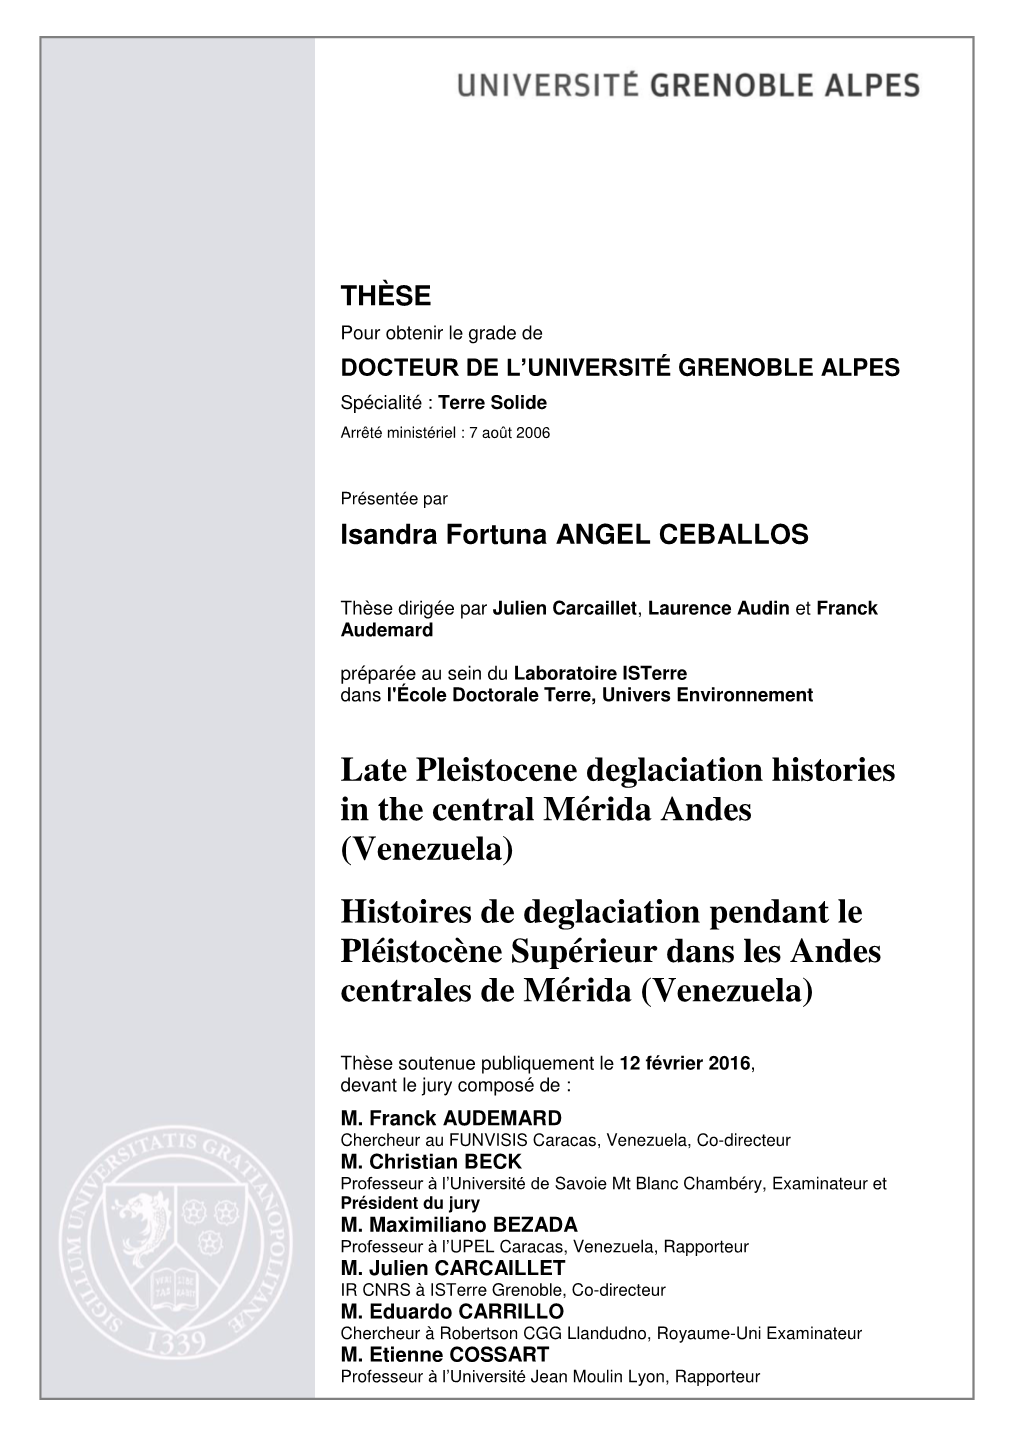 Late Pleistocene Deglaciation Histories in the Central Mérida Andes (Venezuela)